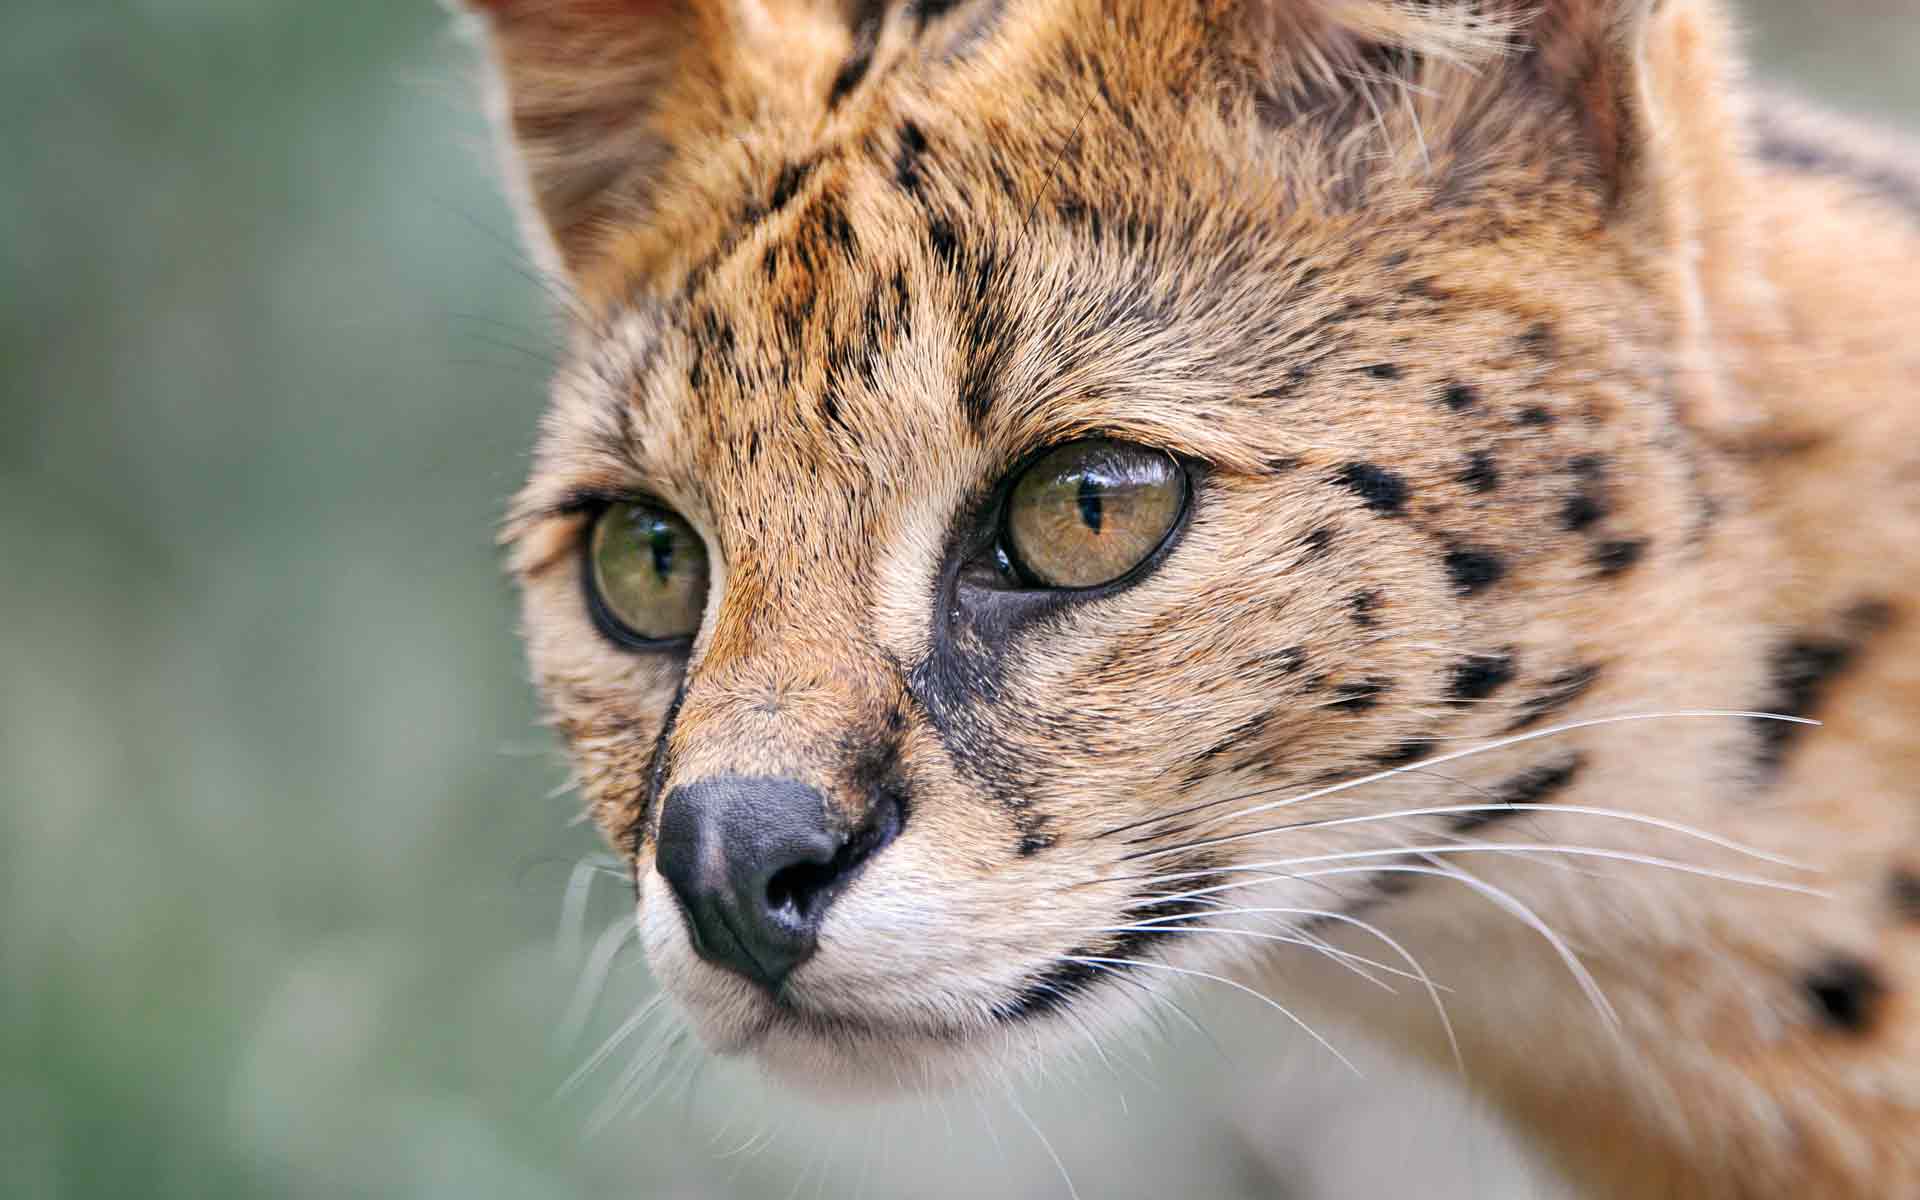 Foto: lihat serval